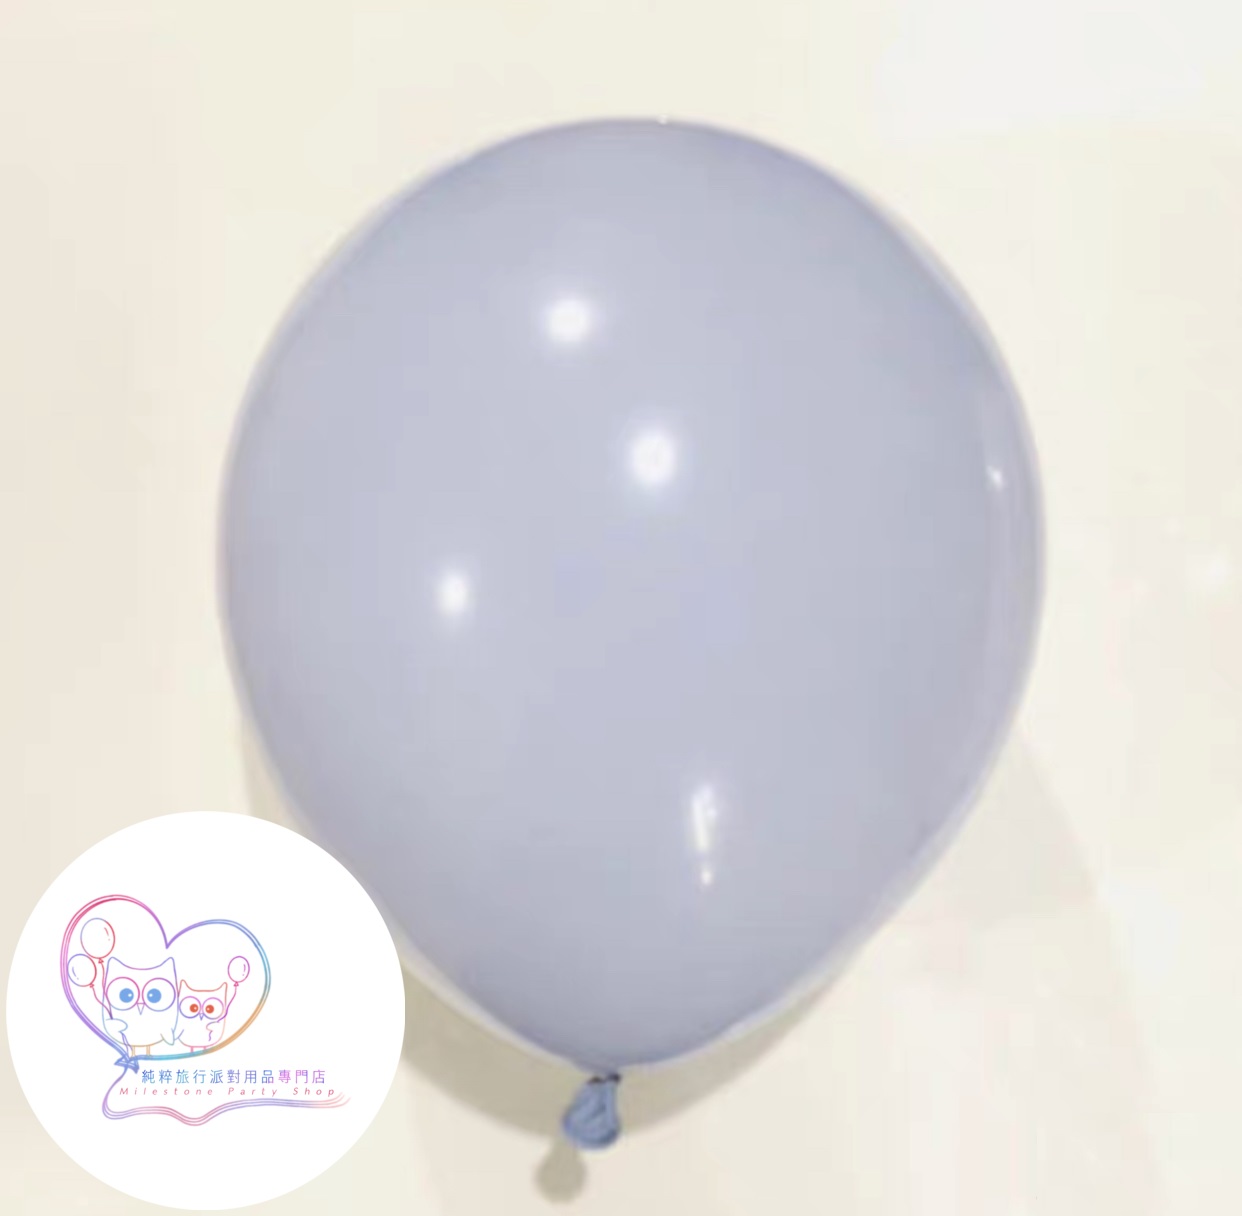 5吋氣球 (馬卡龍霧灰色) (1pc) 5LBN8